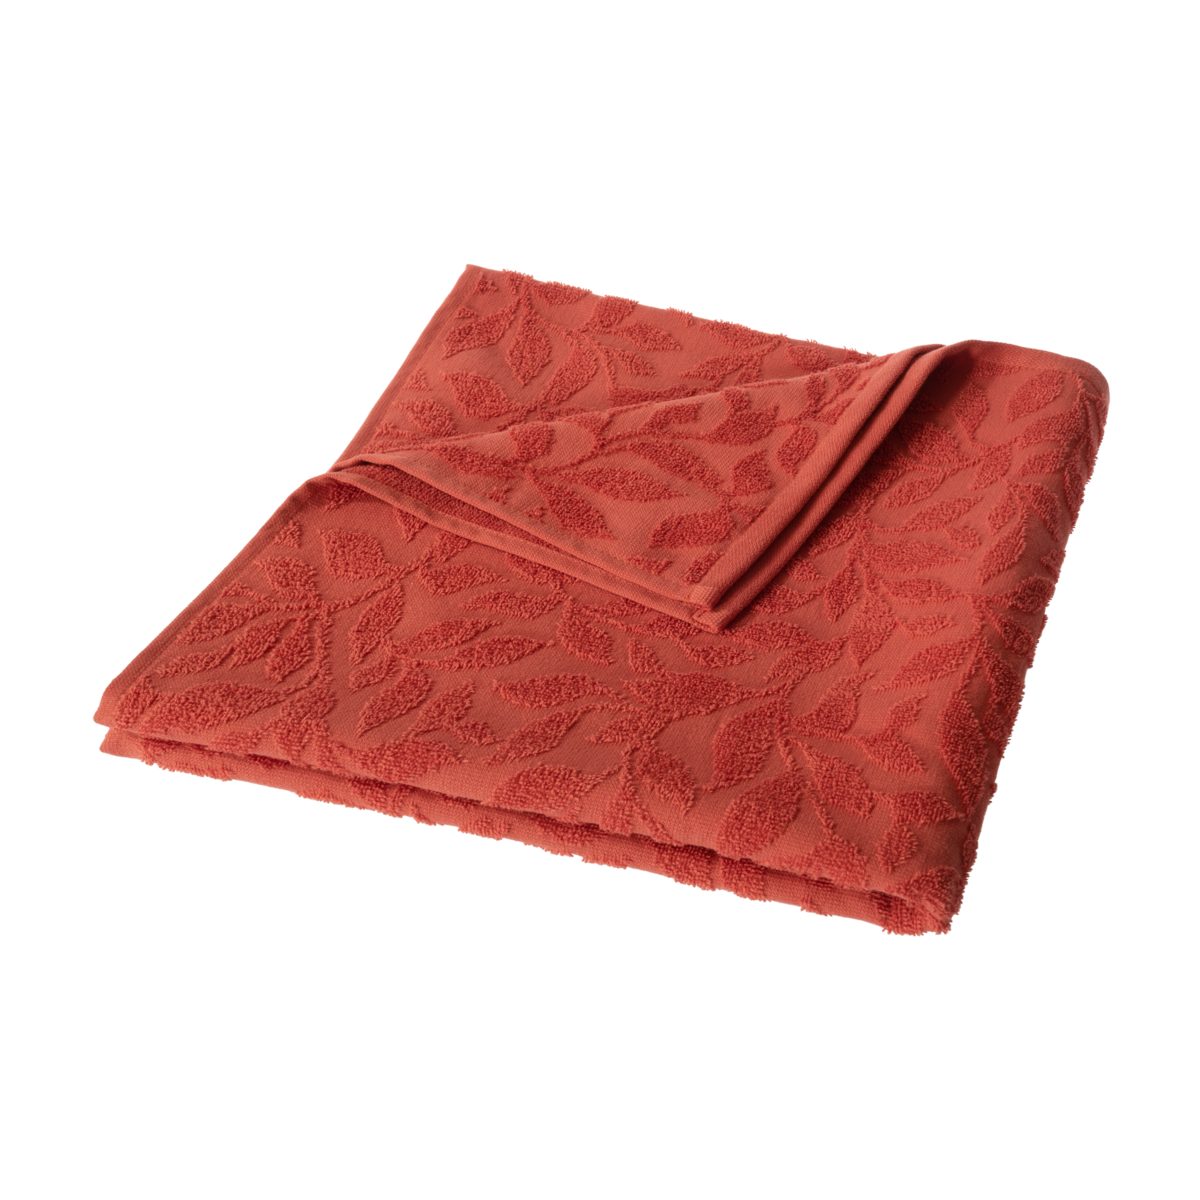 purer LIVING Brick CRAFTS Handtuch Bio-Baumwolle aus Frottee-Stoff Burnt Umweltfreundlicher NORFOLK,